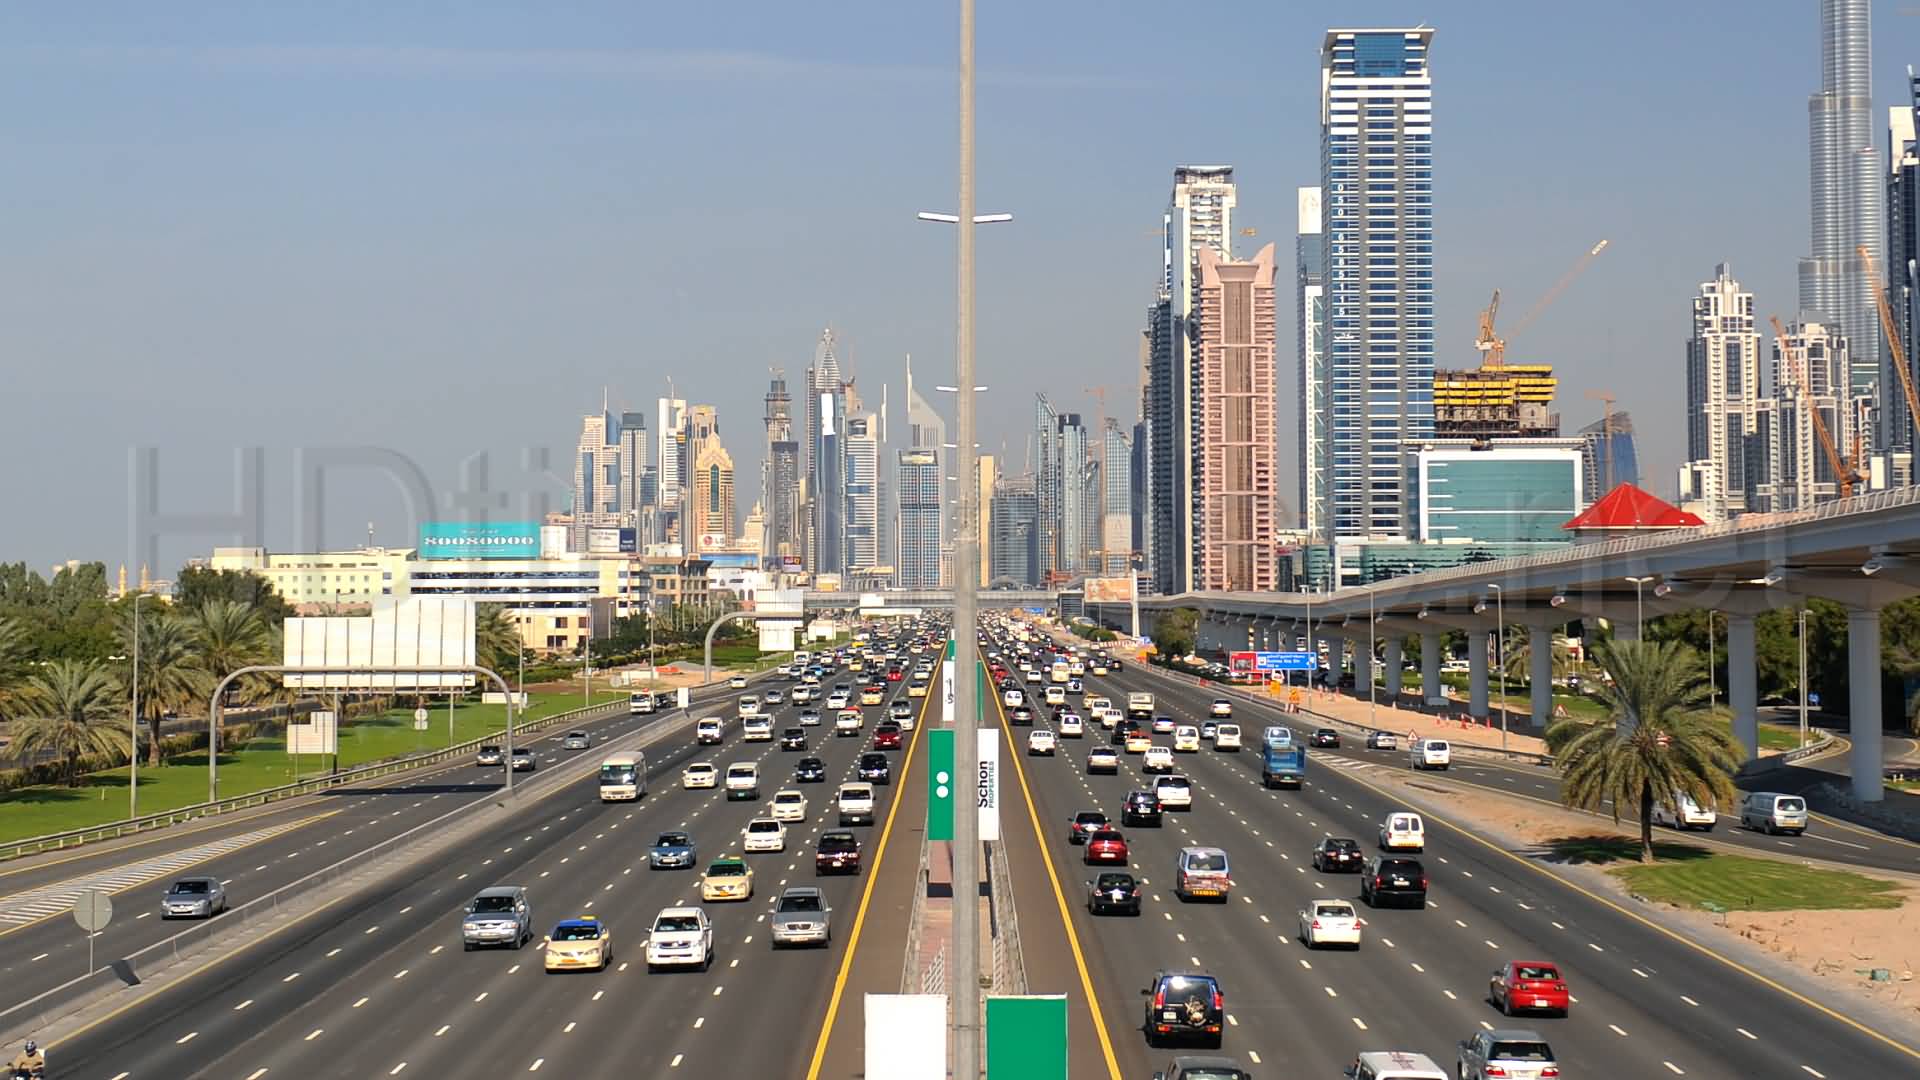 الكشف عن حزمة من المشروعات والأنظمة الذكية للحد من الحوادث في دبي 1